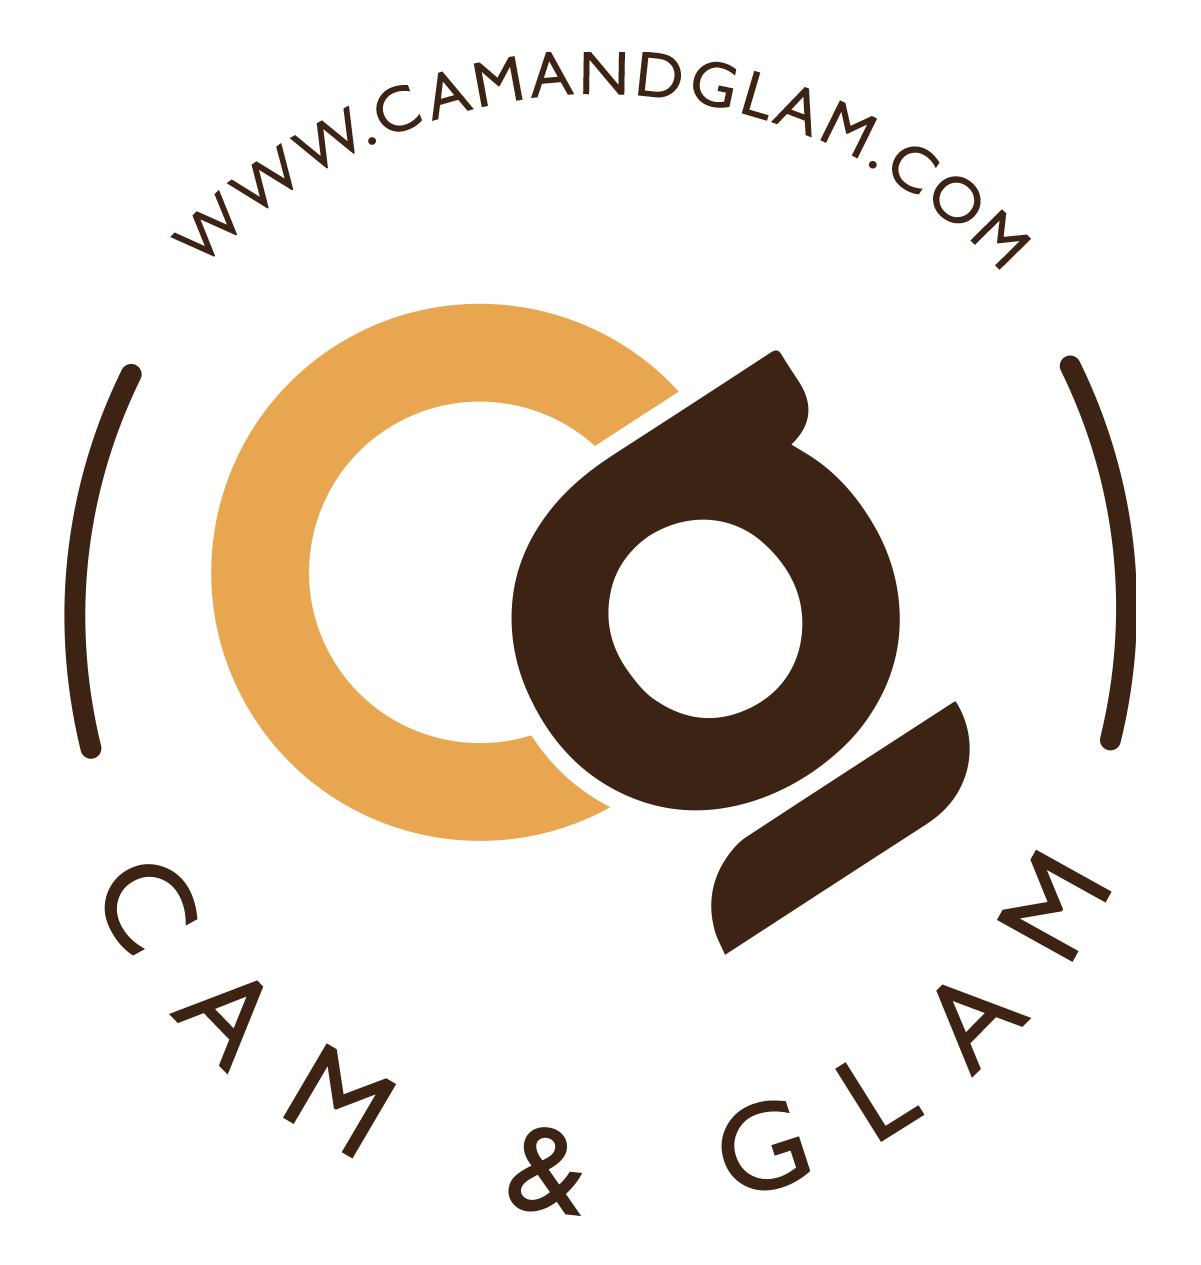 Cam & Glam